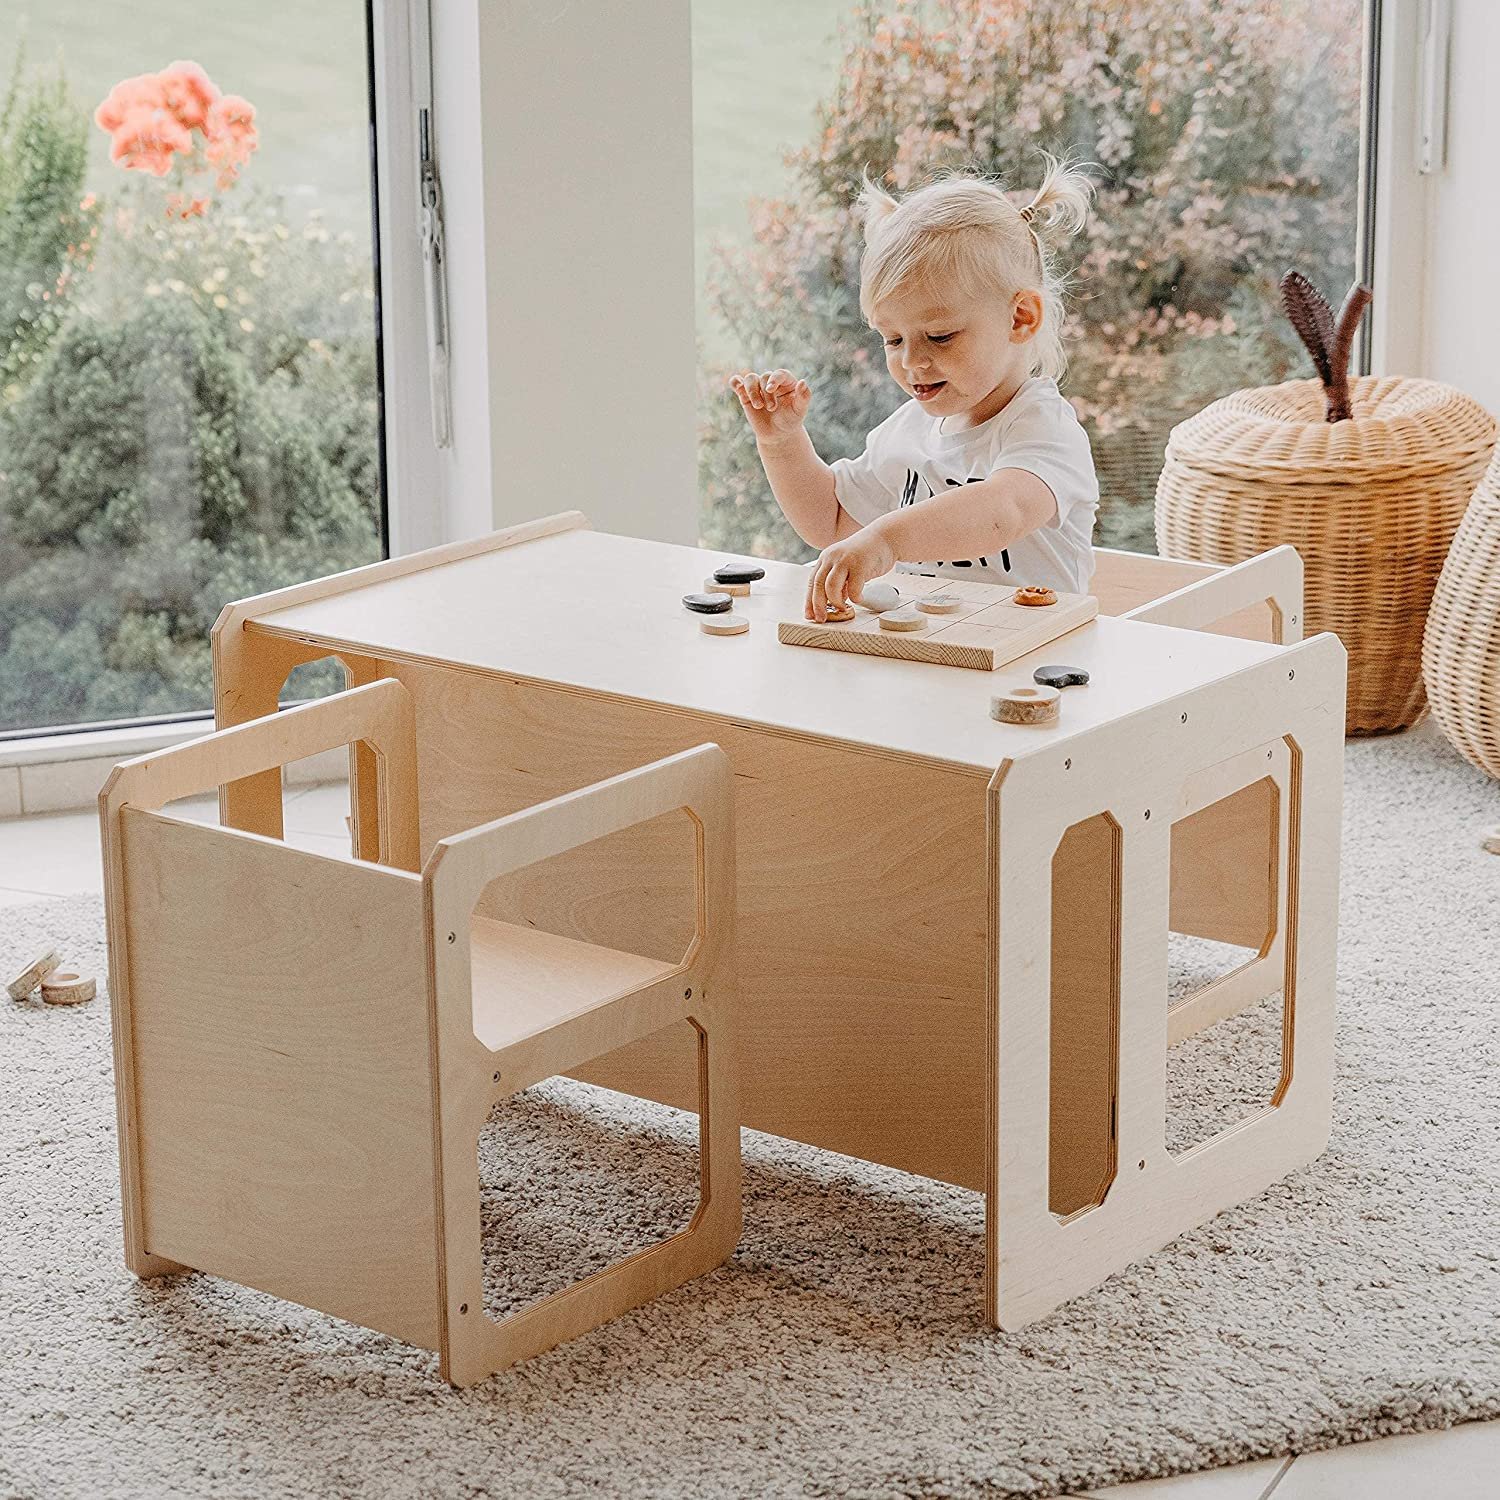 Montessori-Möbel: Montessori Tisch sweet home from wood